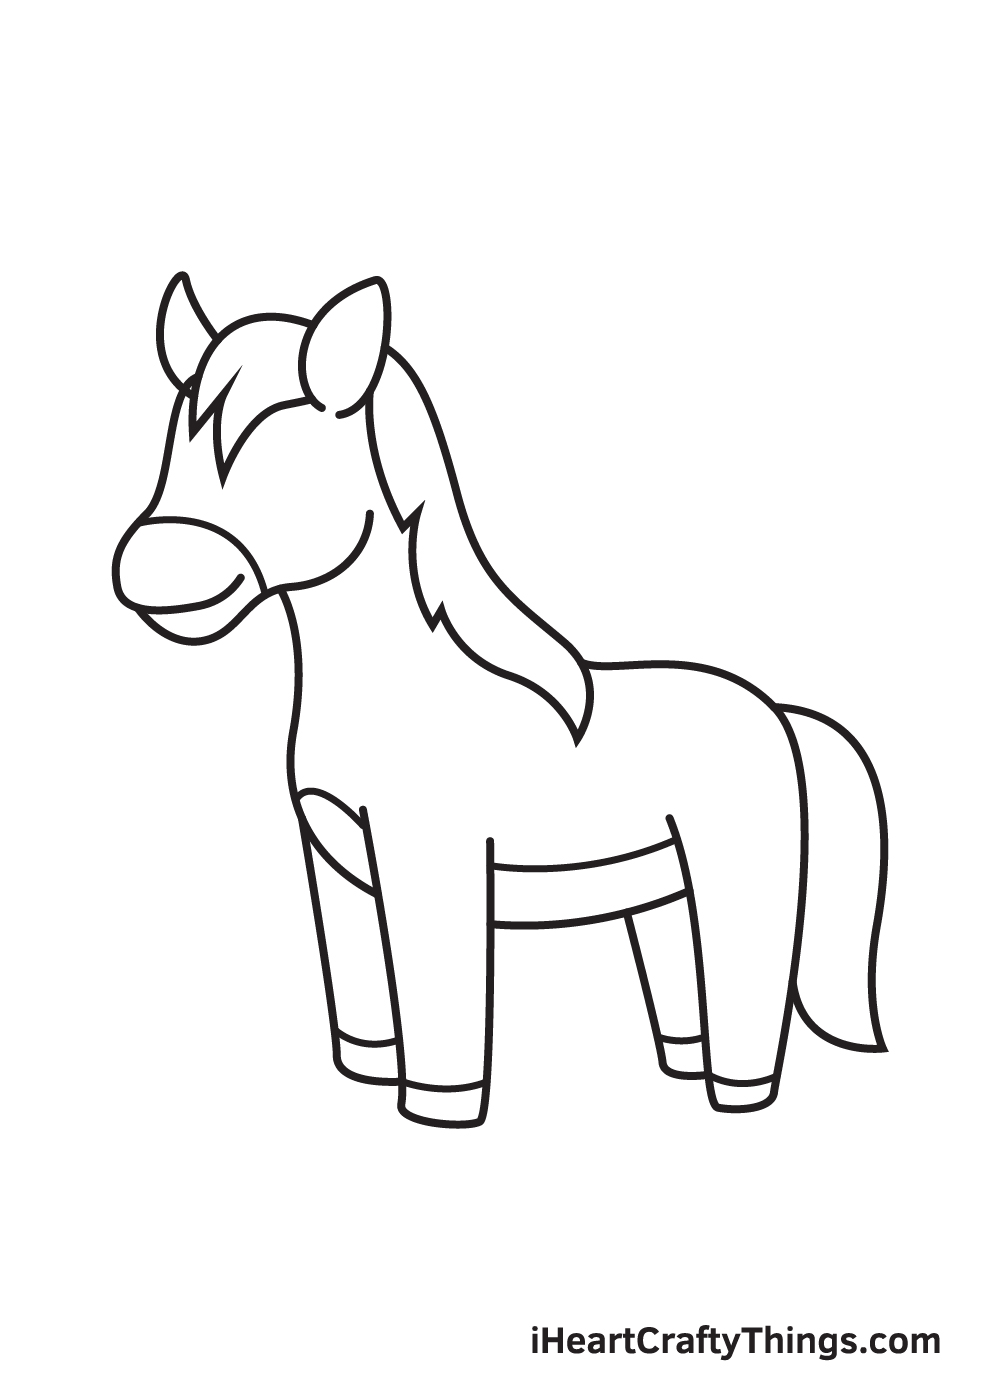 Hướng dẫn phương pháp vẽ con cái ngựa giản dị và đơn giản với 9 bước cơ bản